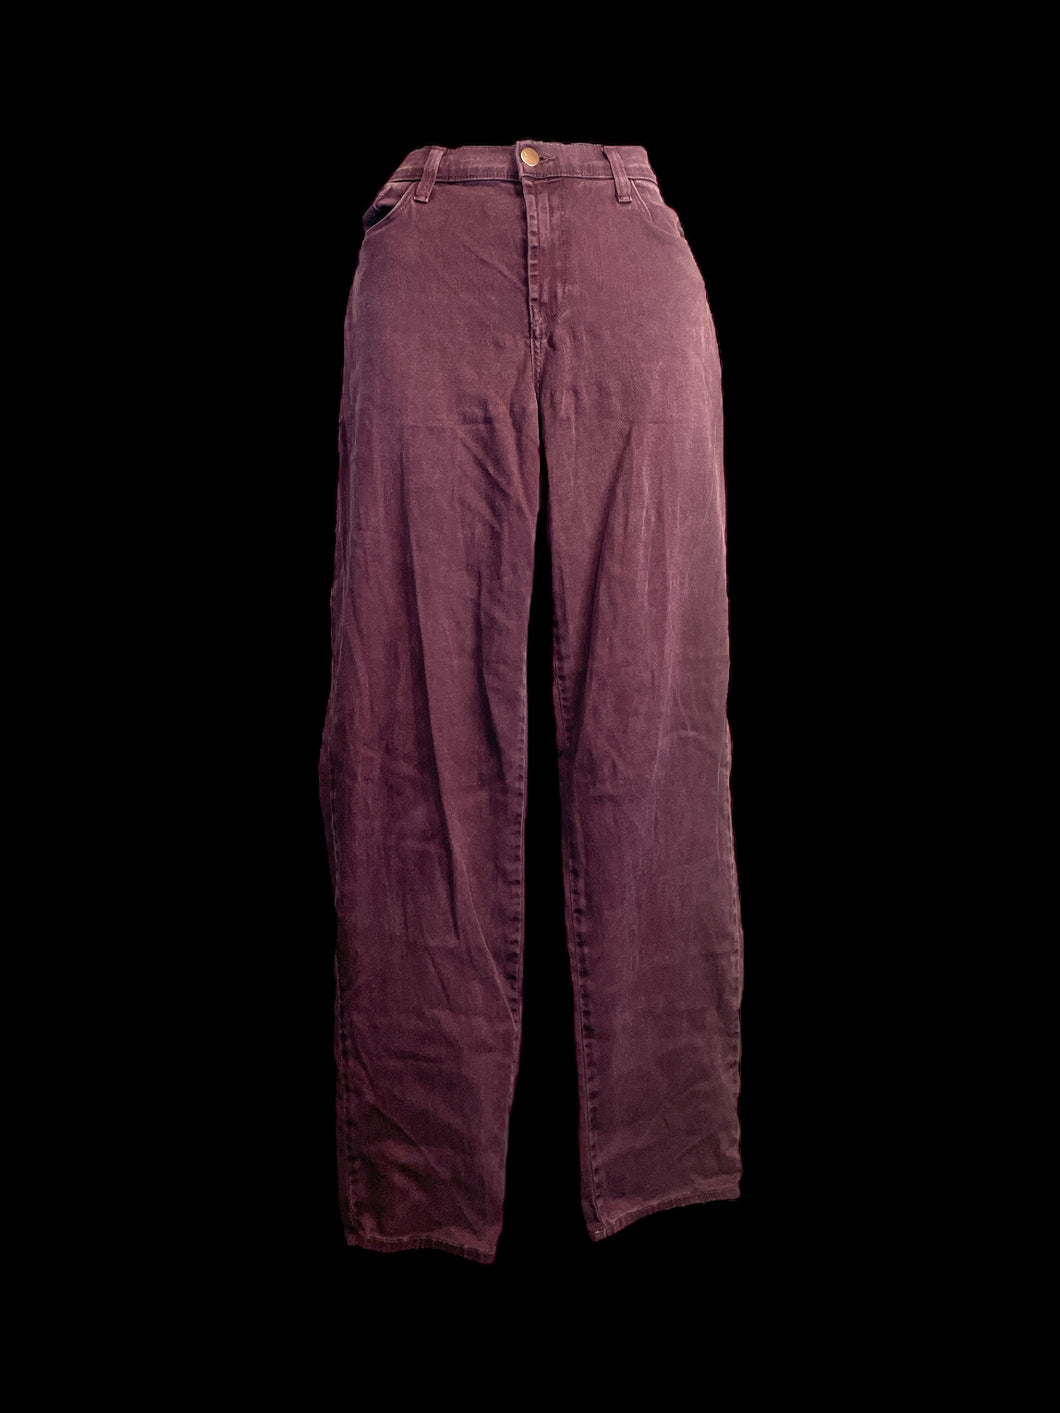 L Burgundy taper leg high waist pants w/ pockets, belt loops, & button/zipper closure